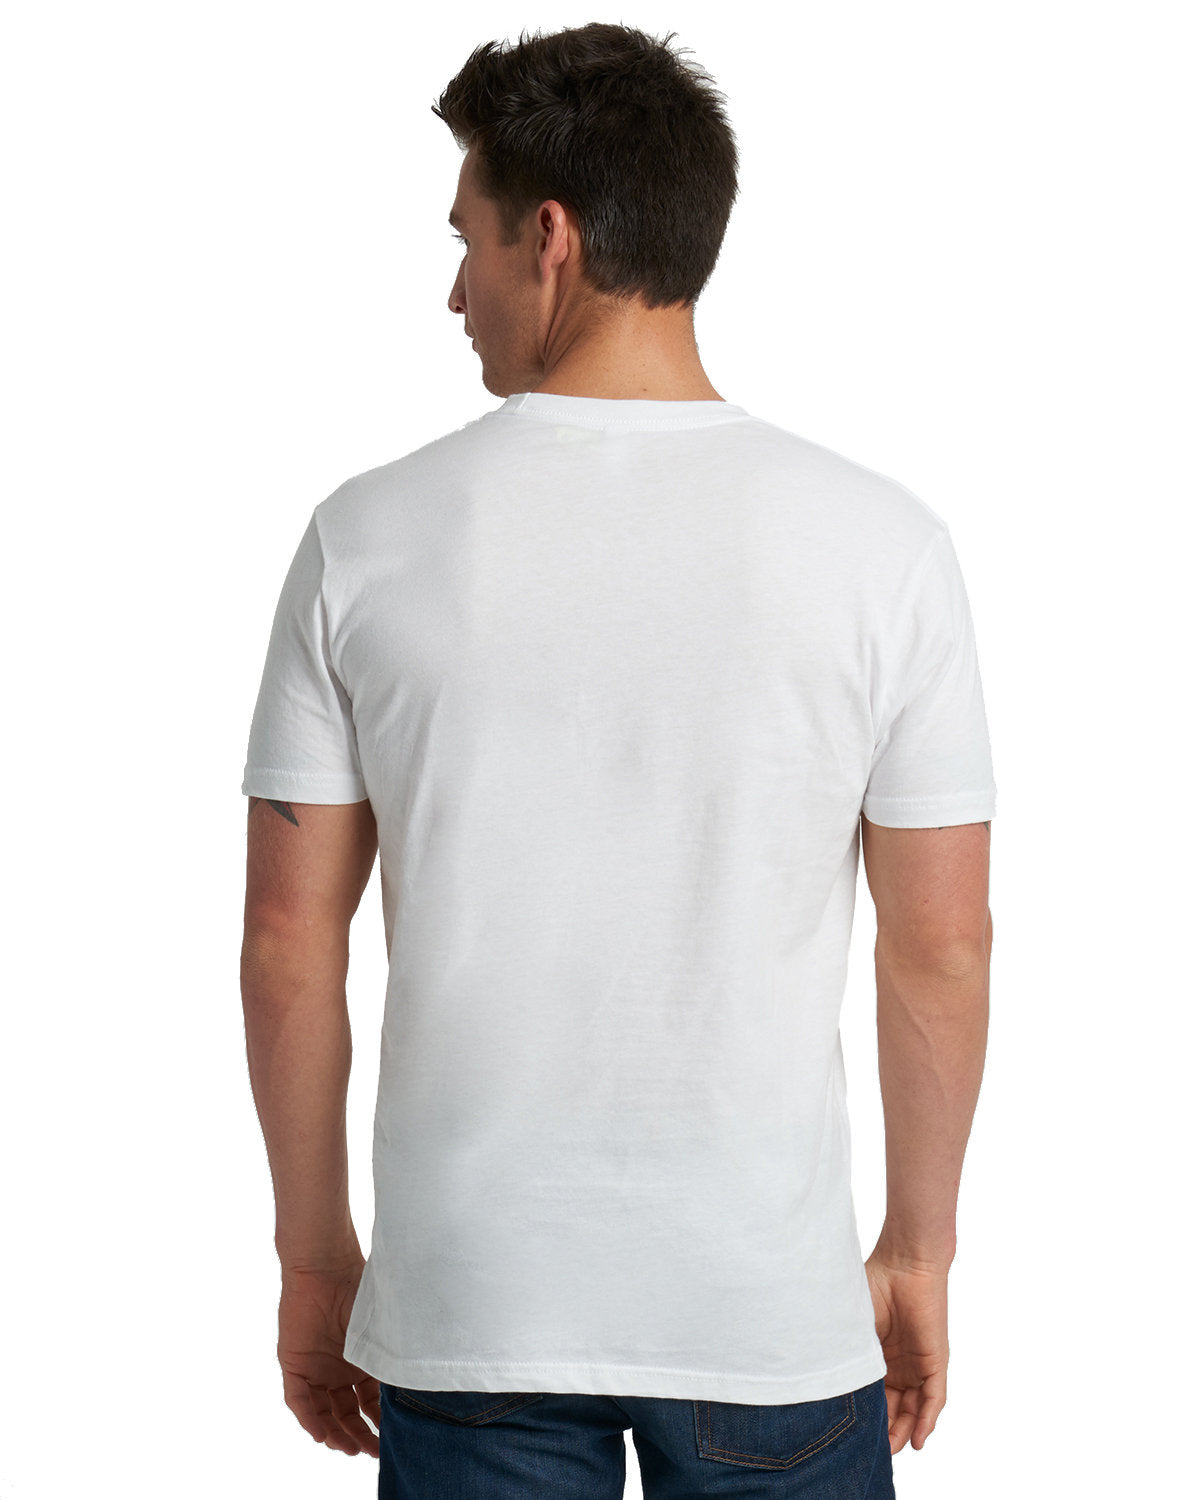 Next Level 3600 Cotton T-Shirt